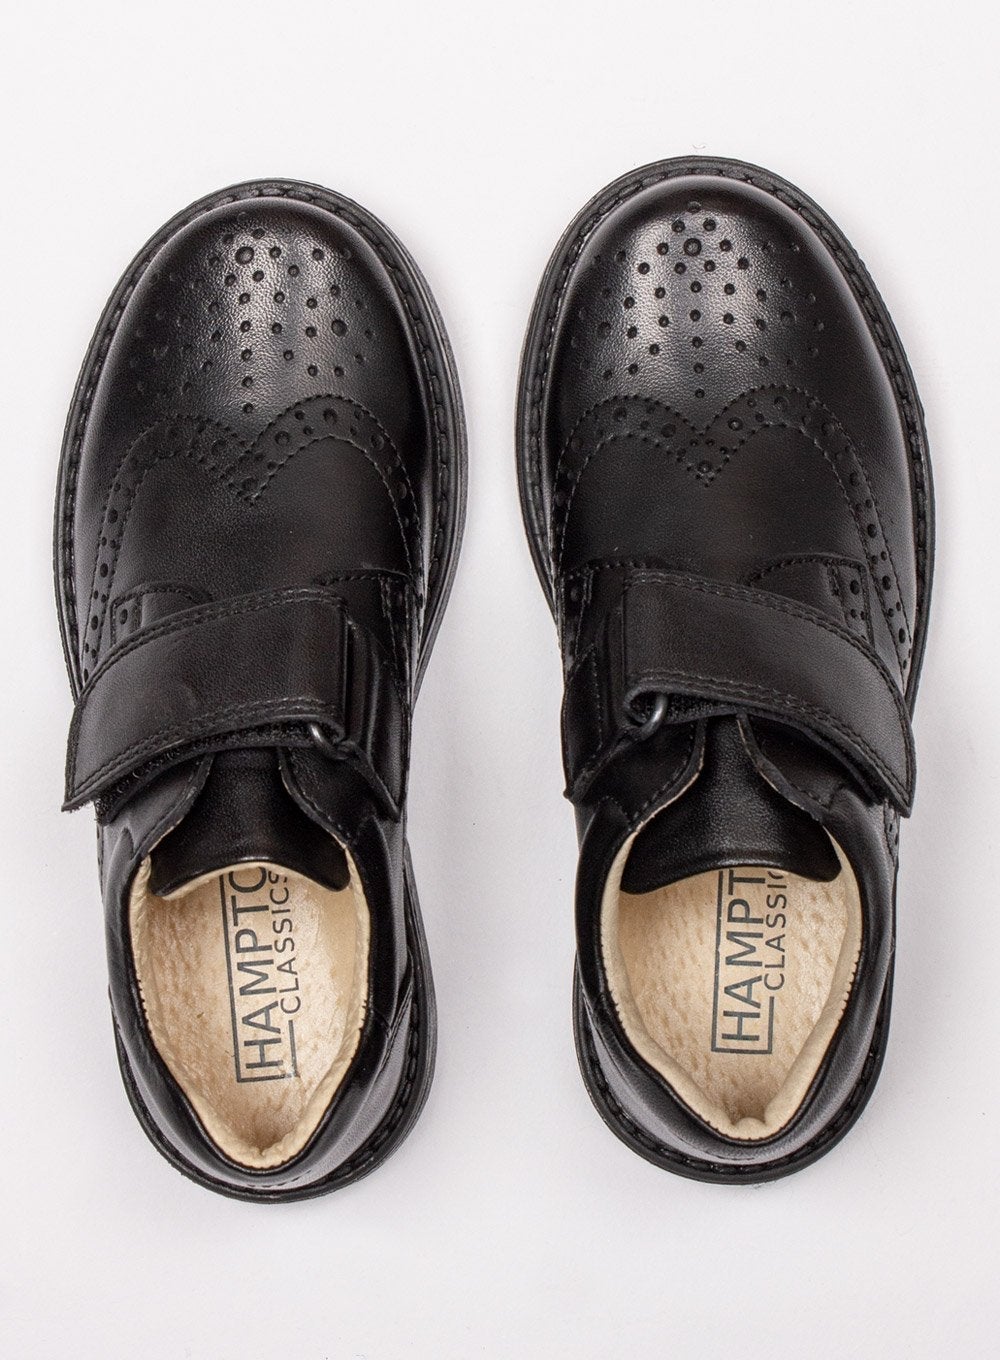 https://www.trotterslondon.com/cdn/shop/products/hampton-classics-school-shoes-hampton-classics-gregory-school-shoes-in-black-28609672544317.jpg?v=1657619348